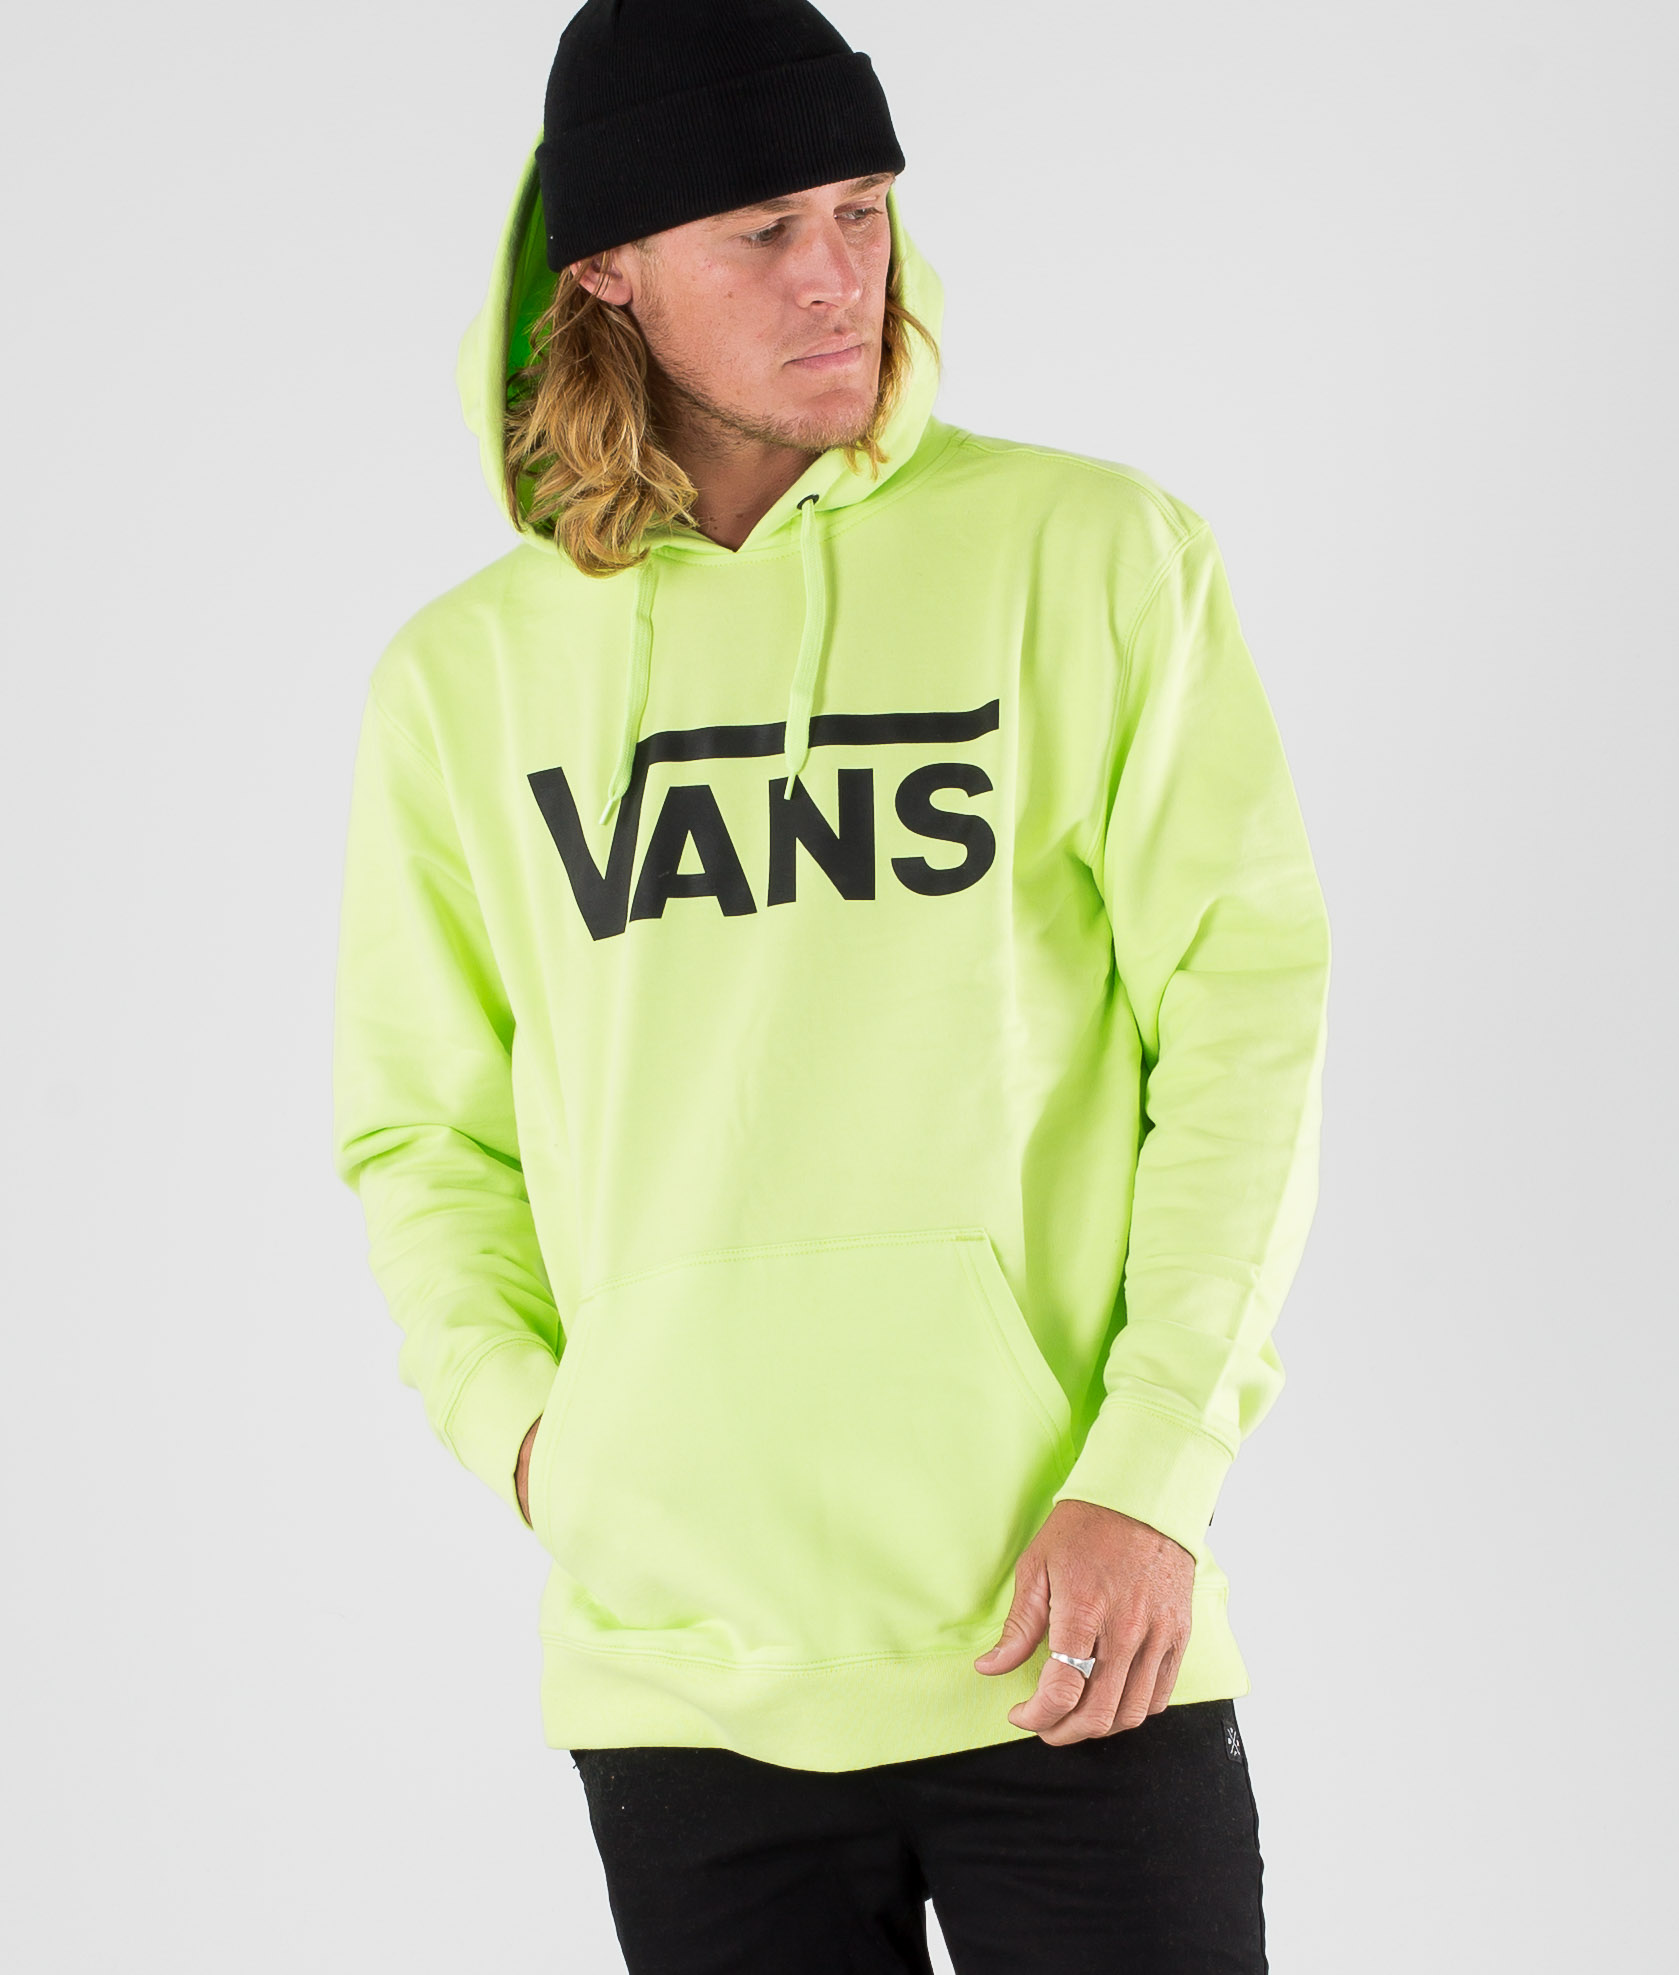 vans green hoodie